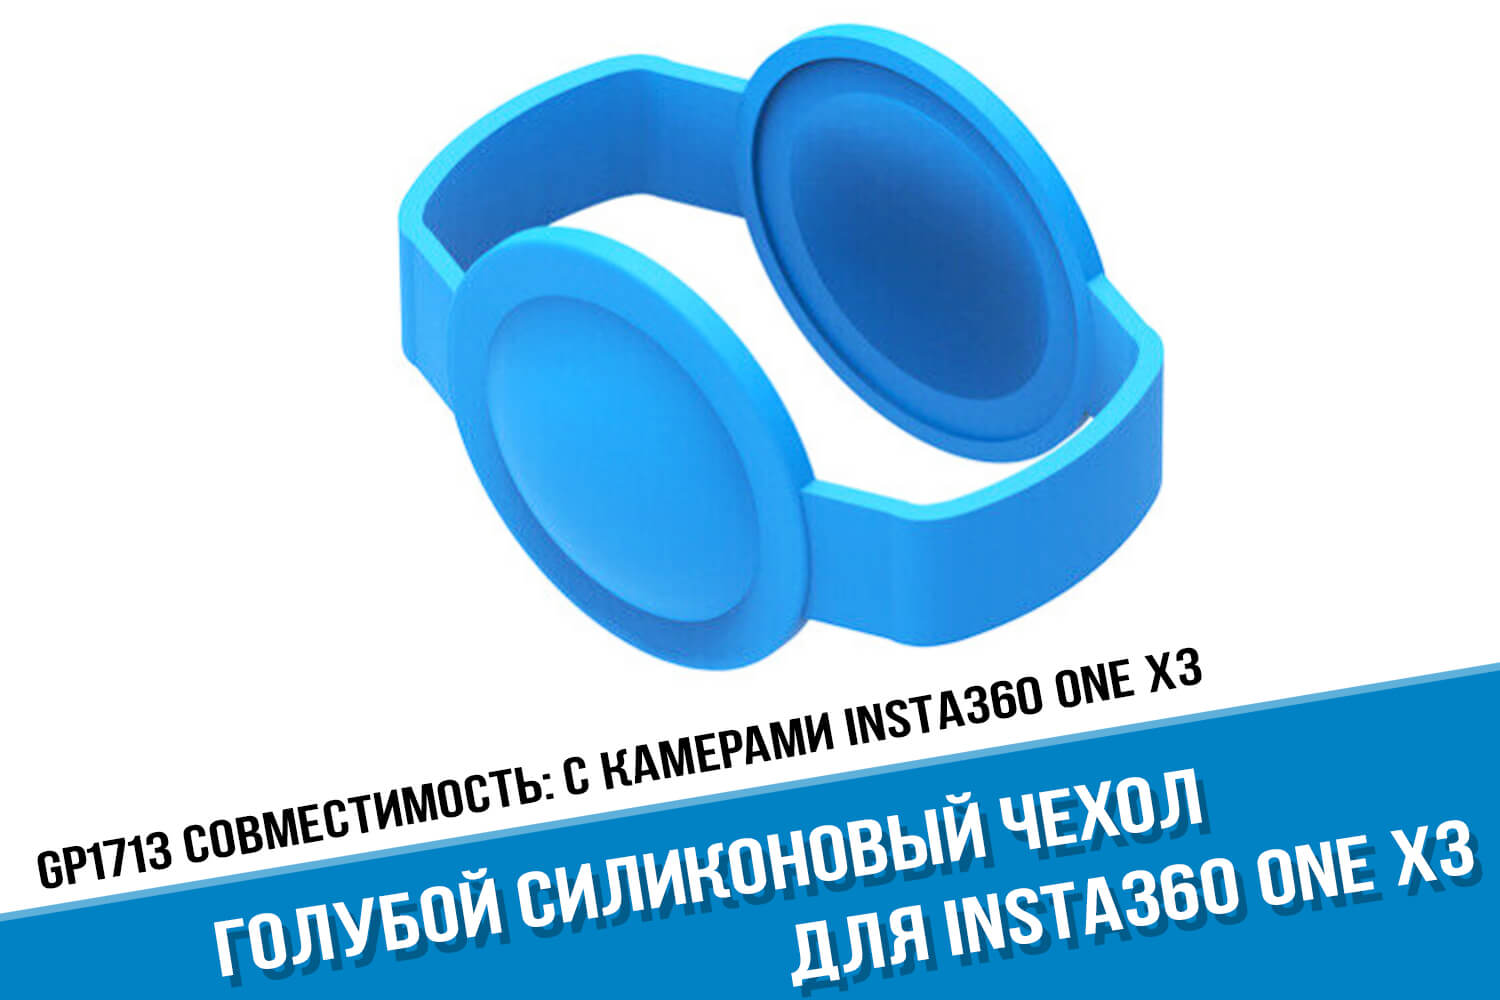 Голубой силиконовый чехол Insta360 One X3